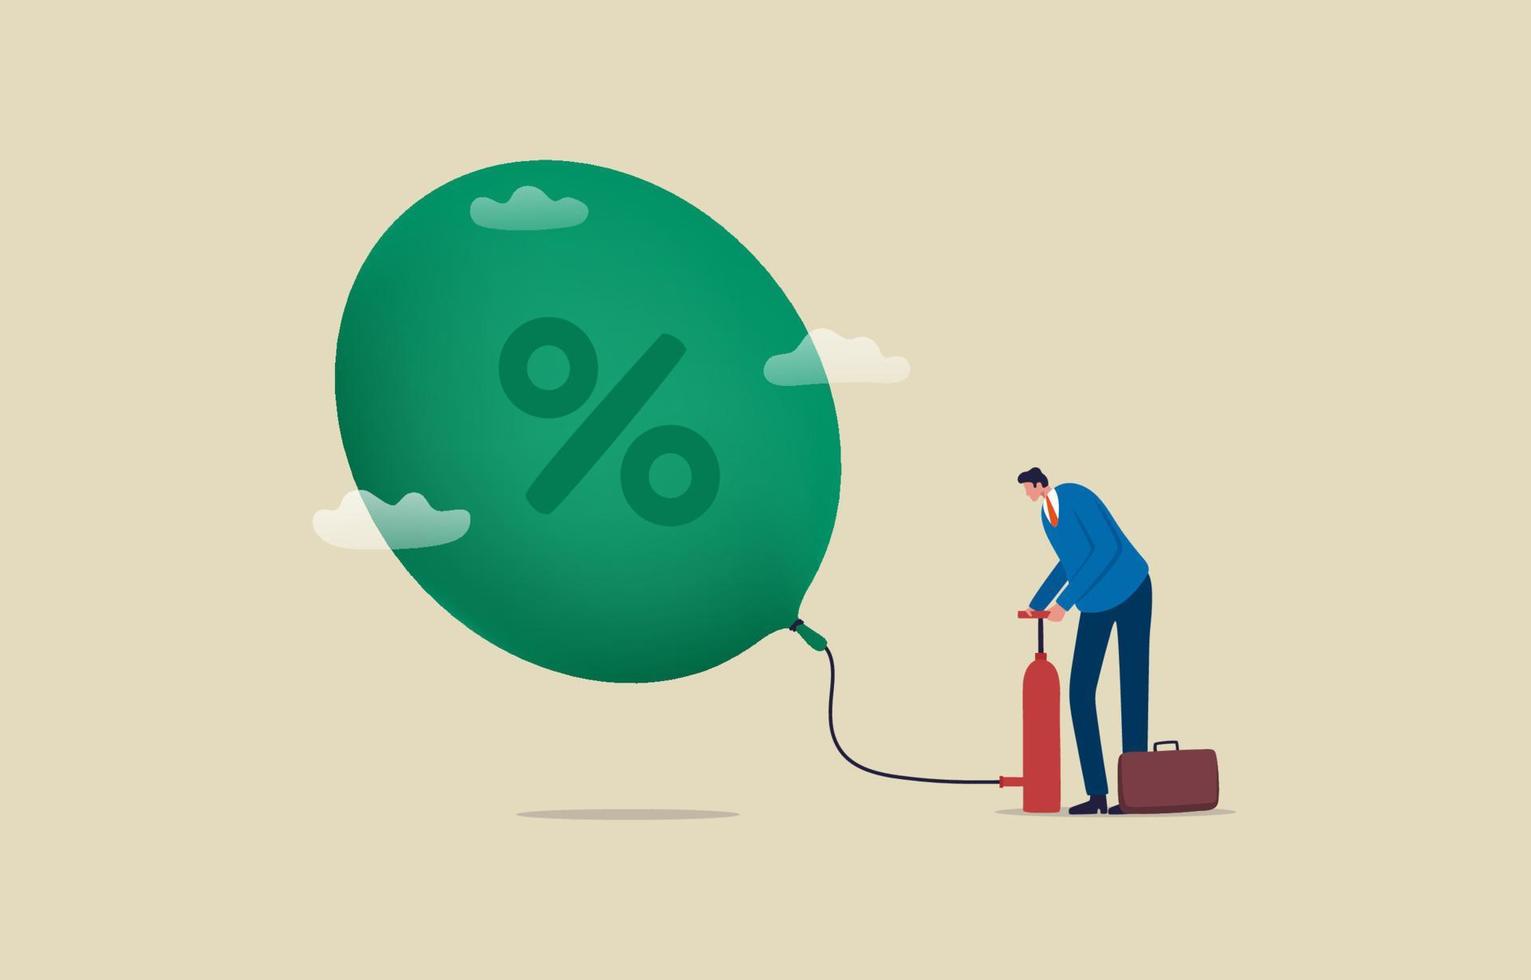 bolha inflacionária e o financeiro. crise econômica recessão. empresário infla um balão de símbolo de porcentagem com bomba de pneu. ilustração vetor